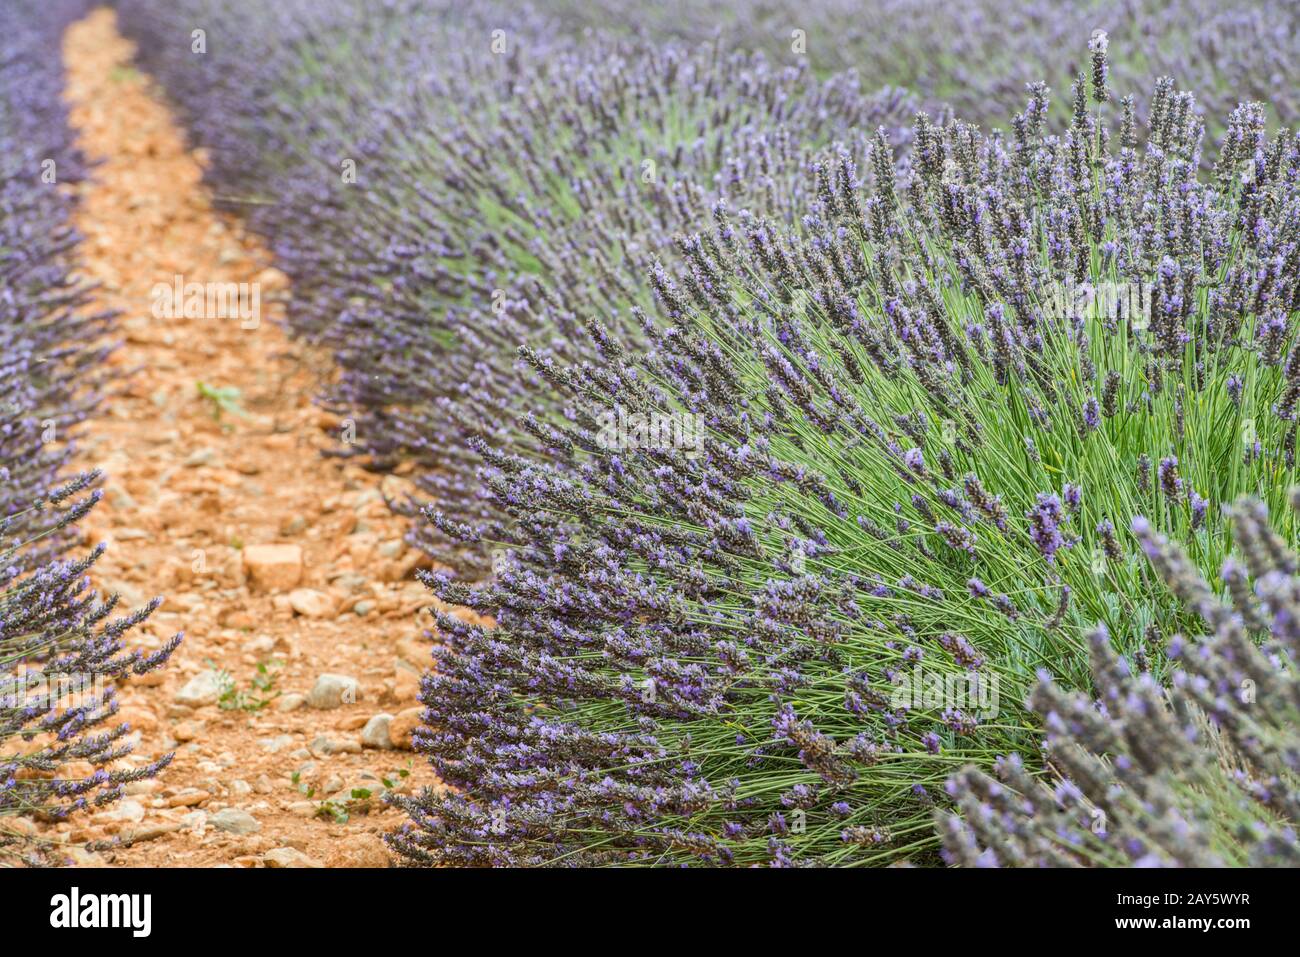 Vista cercana de las líneas rectas de arbustos de lavanda violeta Foto de stock